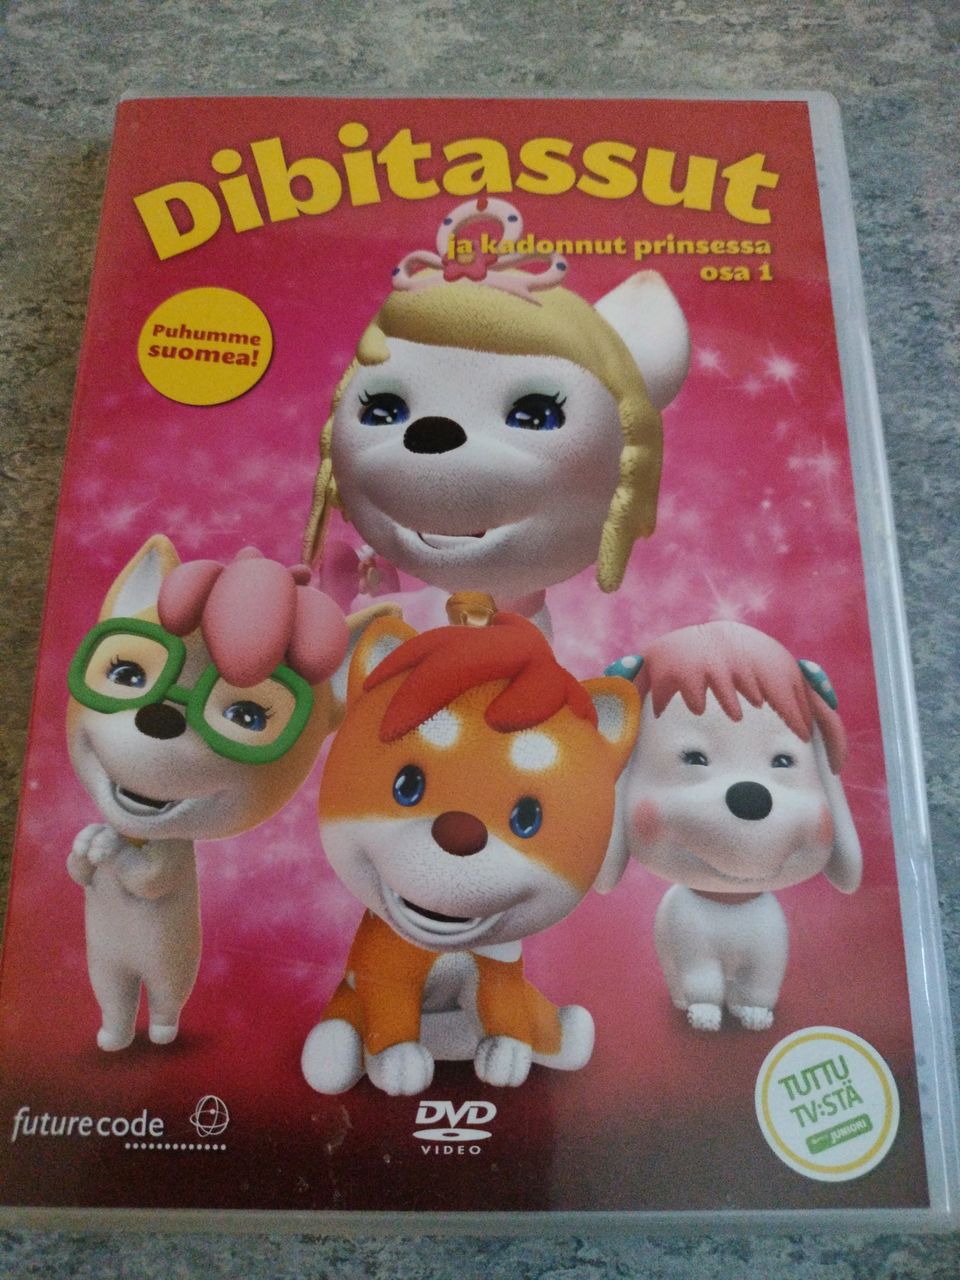 Dibitassut DVD